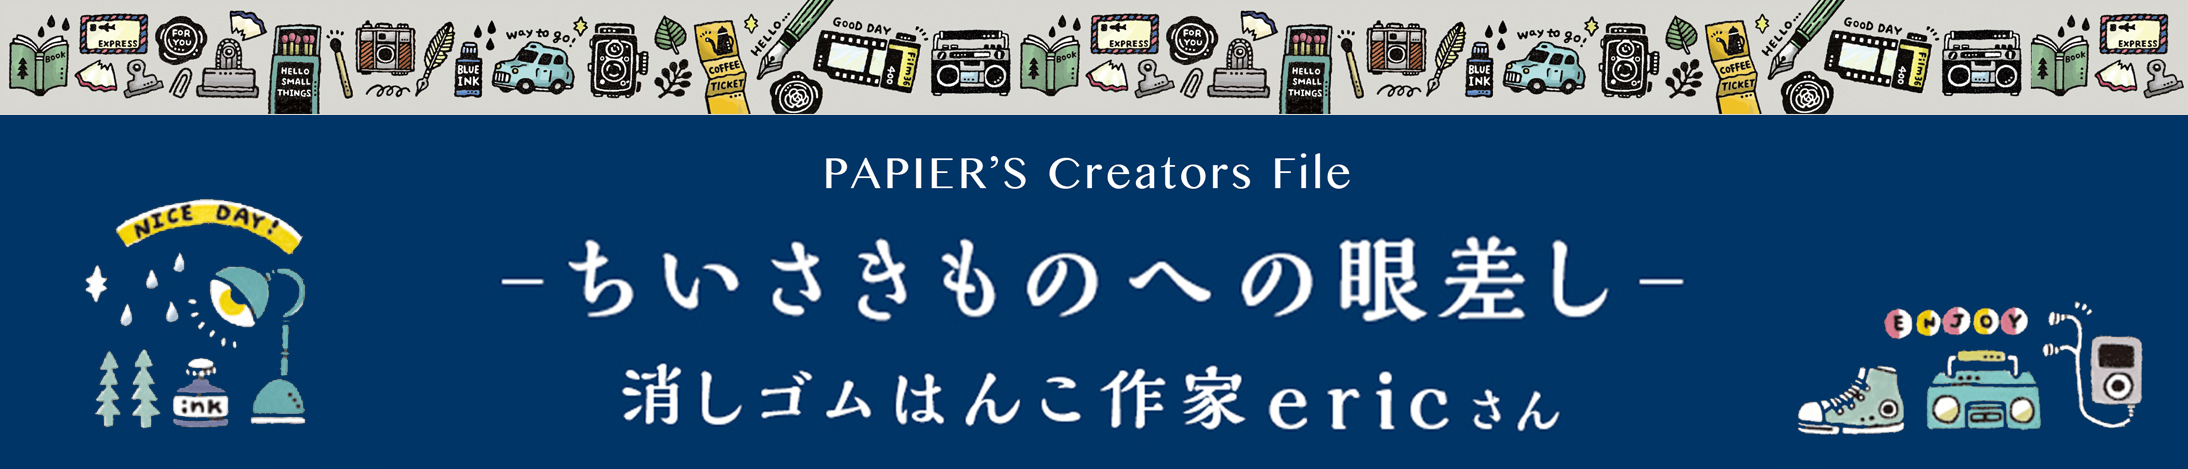 【PAPIER’s Creators File vol.2】消しゴムはんこ作家 / ericさん